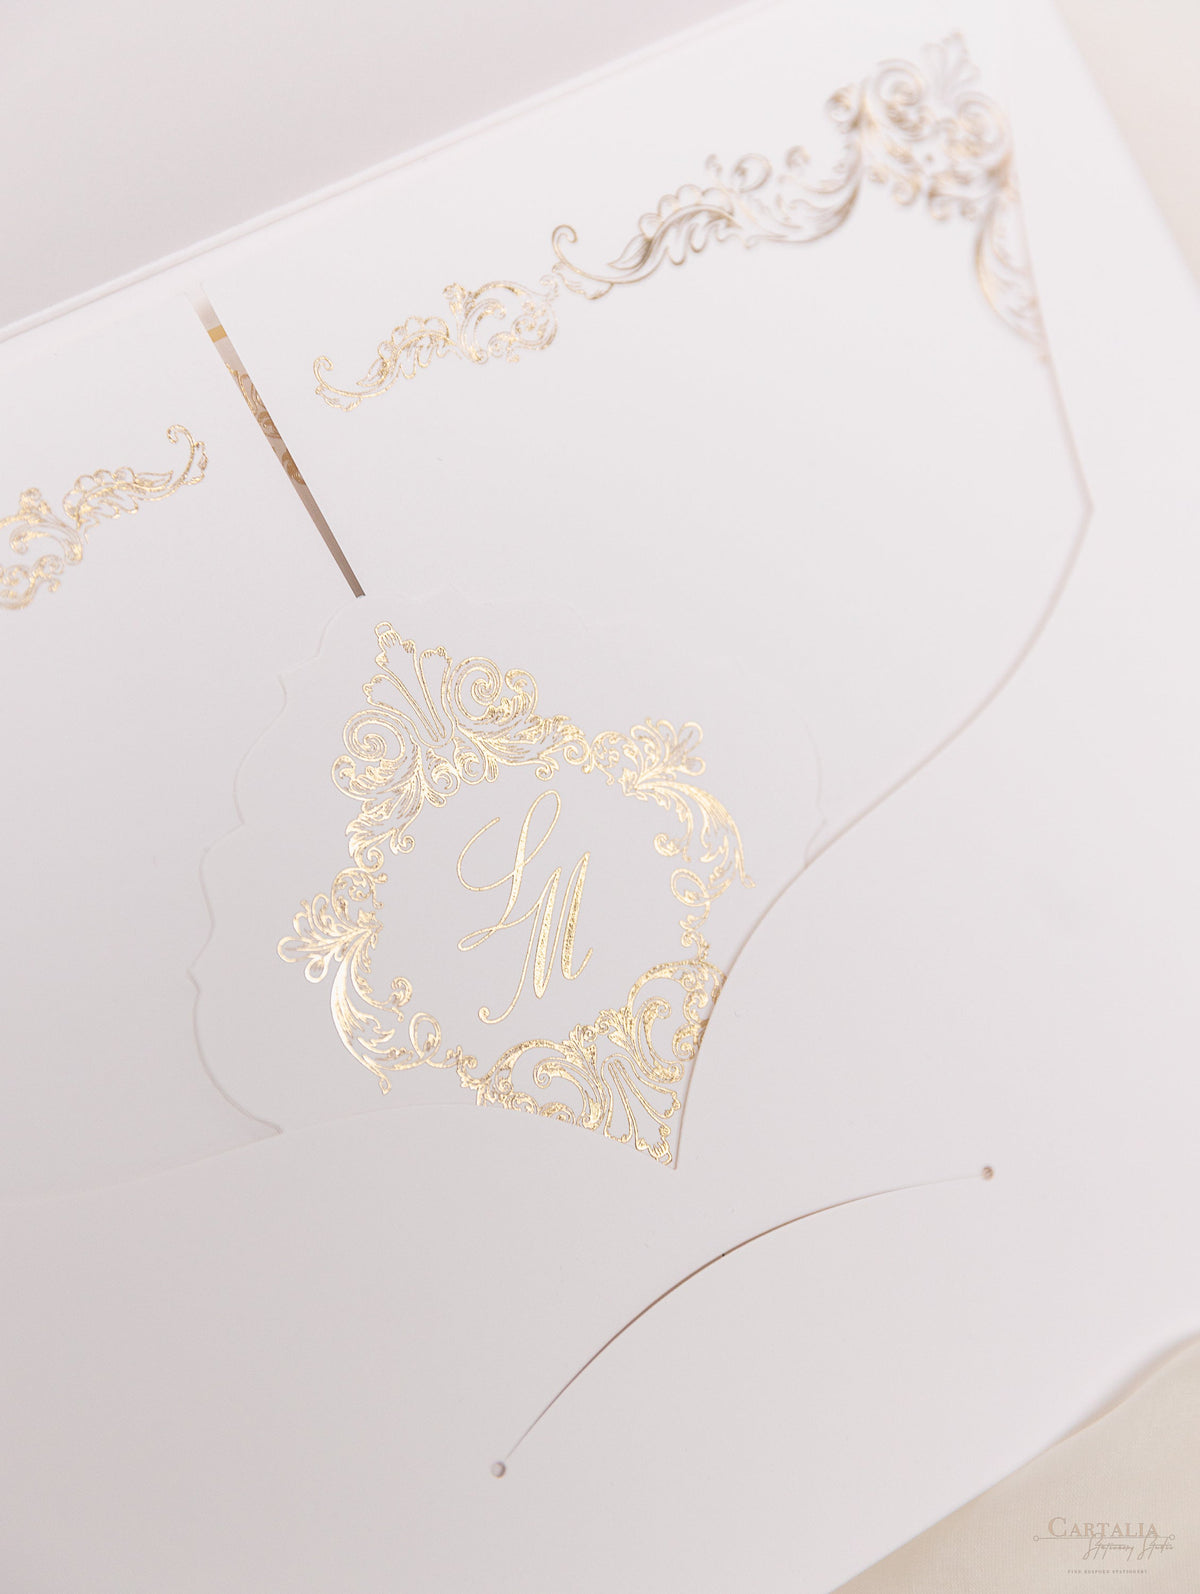 Luxury Gold Foil Invitation Pocket Fold Suite pour le jour du mariage, RSVP, carte d'information avec poche coupée au laser, script de calligraphie